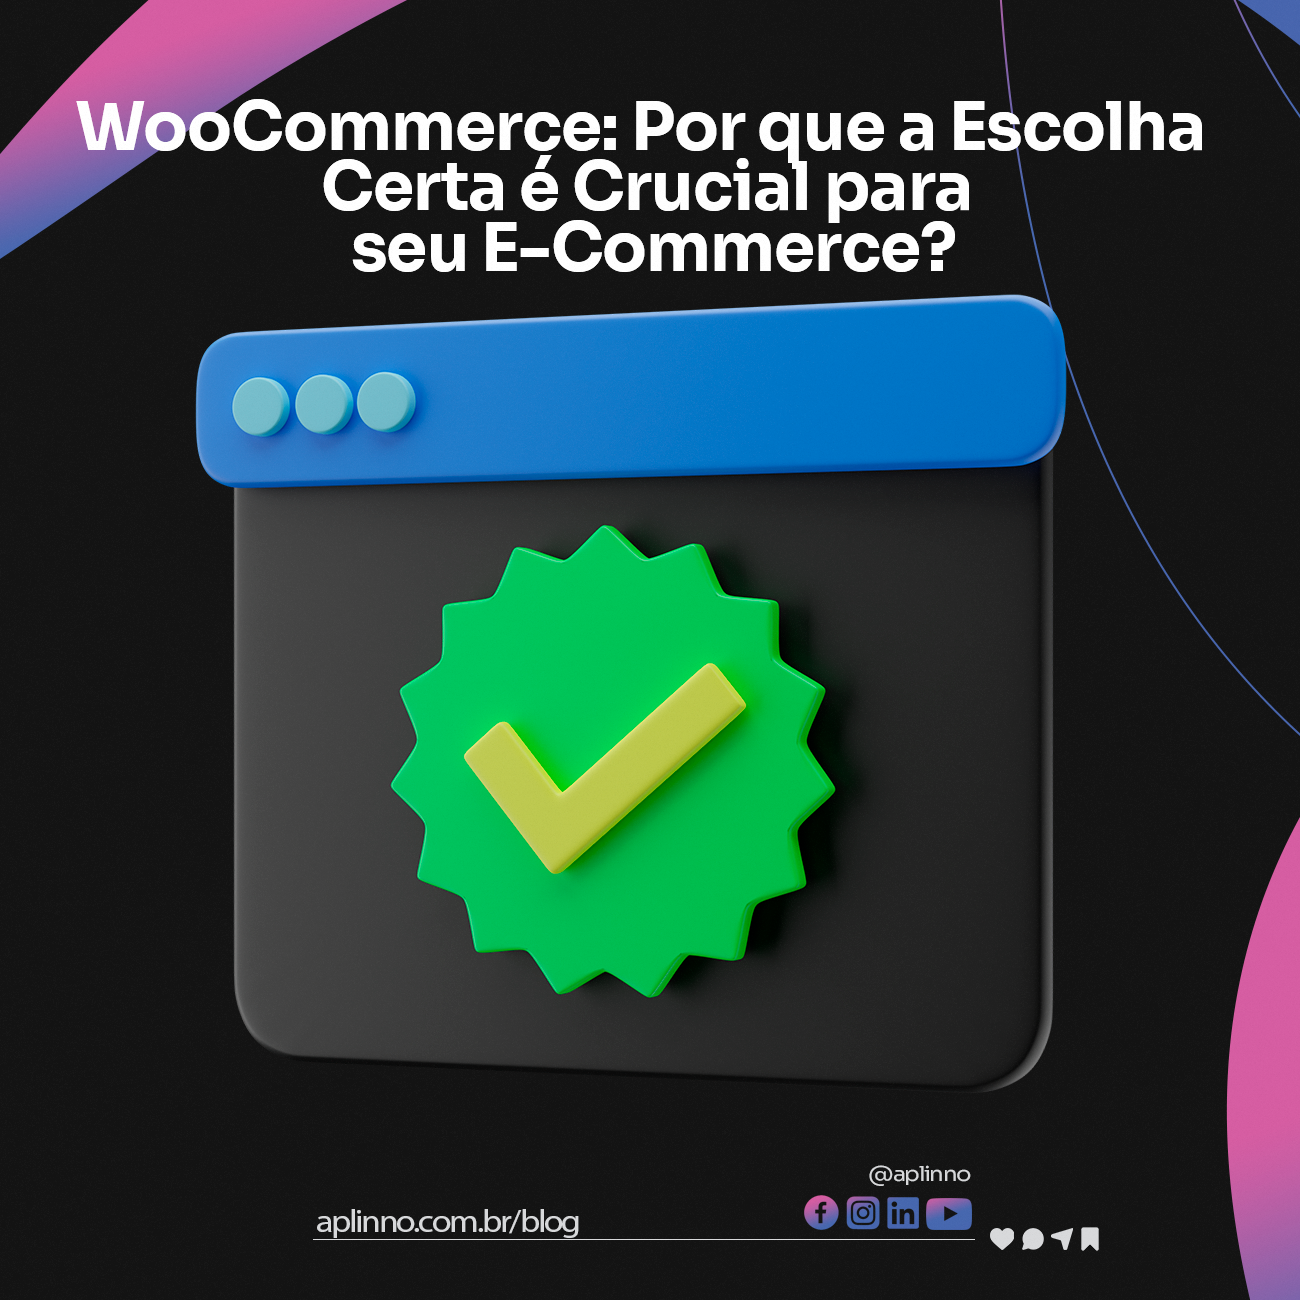 WooCommerce: Por que a Escolha Certa é Crucial para seu E-Commerce?